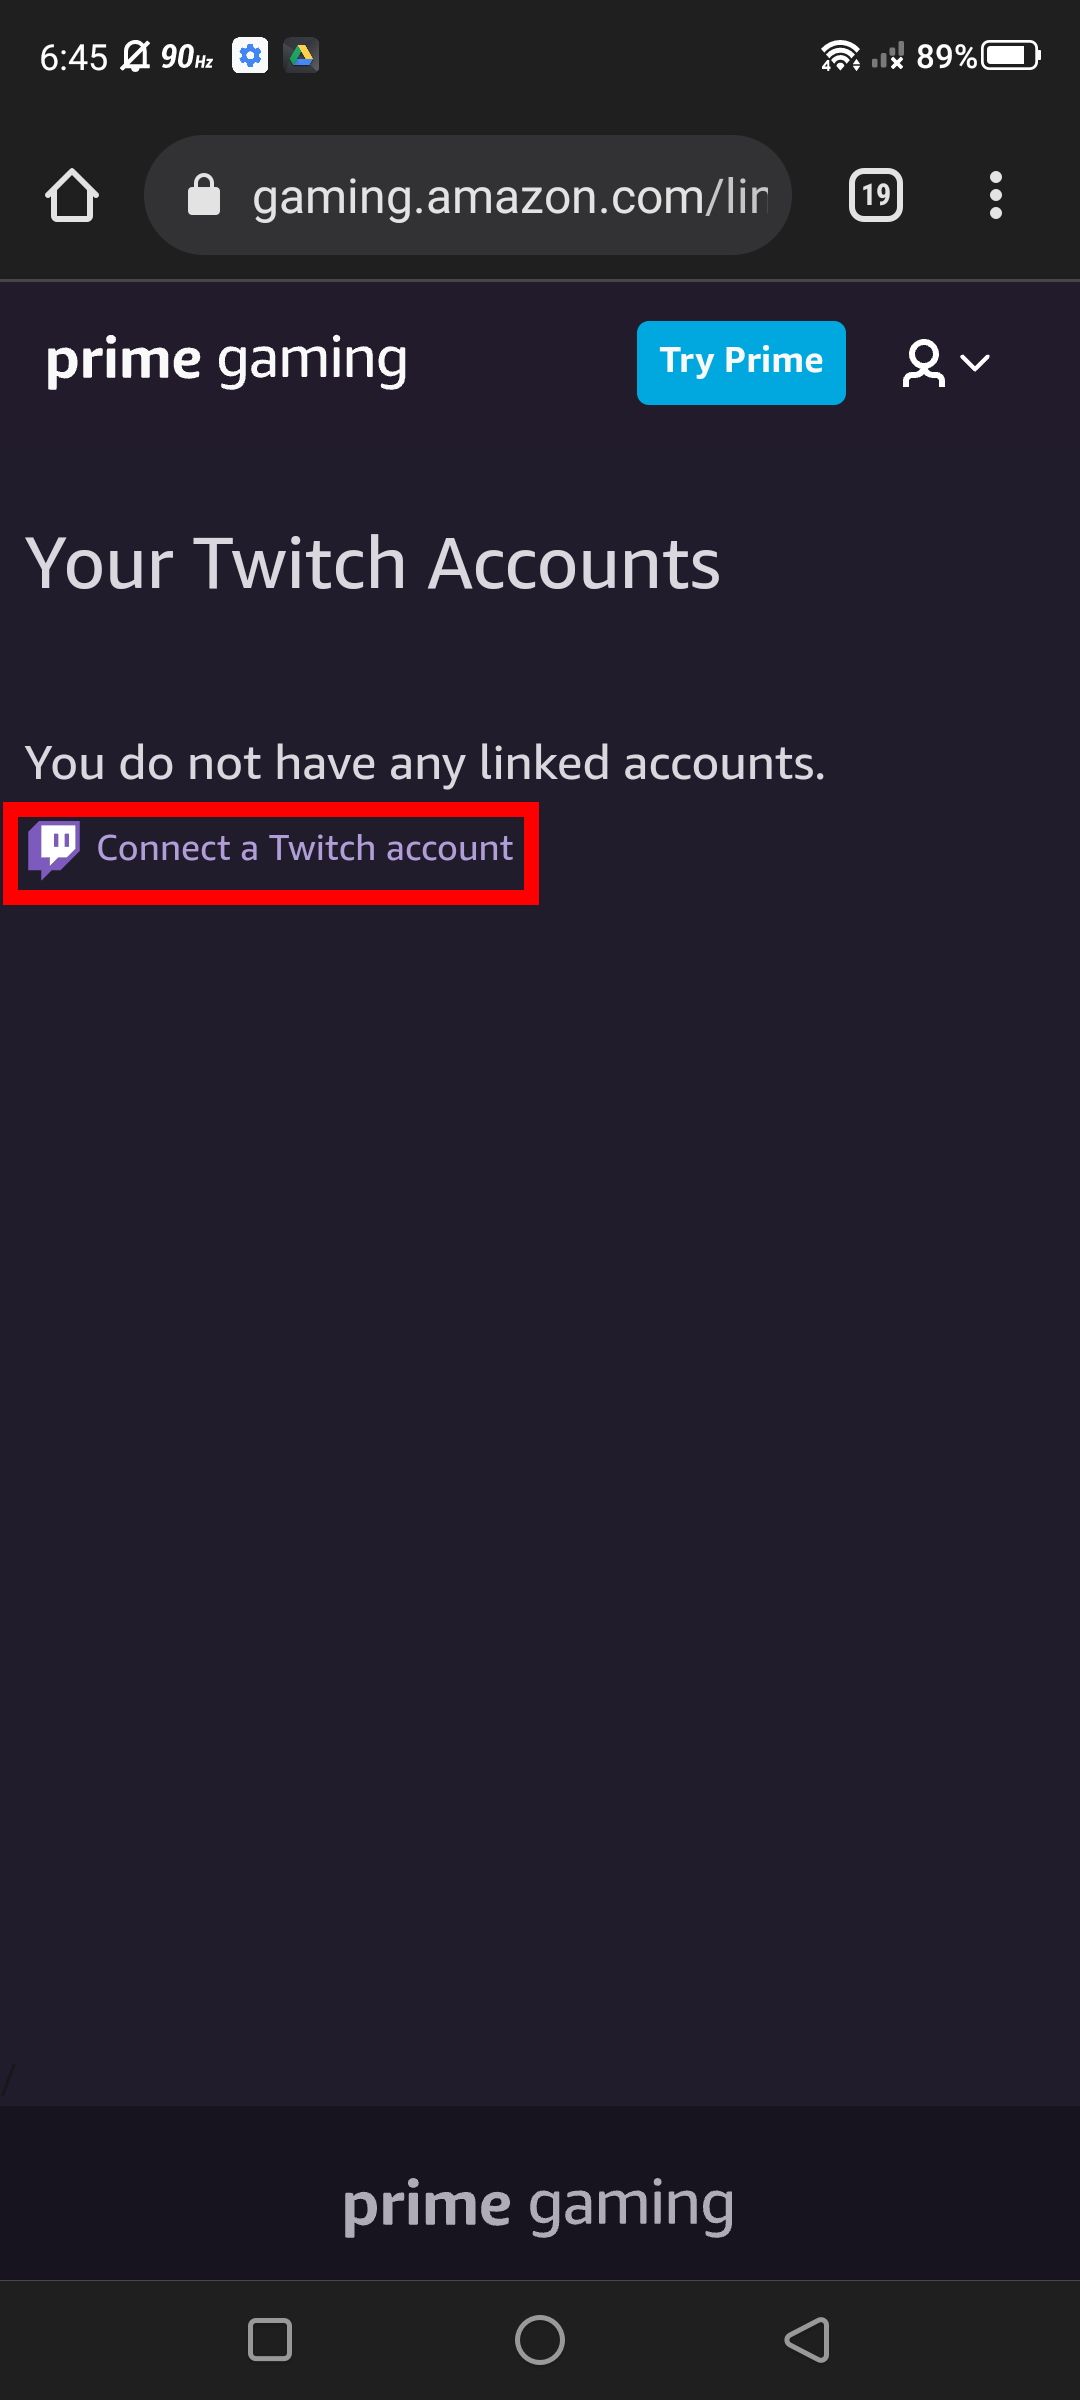 Captura de tela da conexão com uma conta do Twitch no Amazon Gaming (navegador móvel)